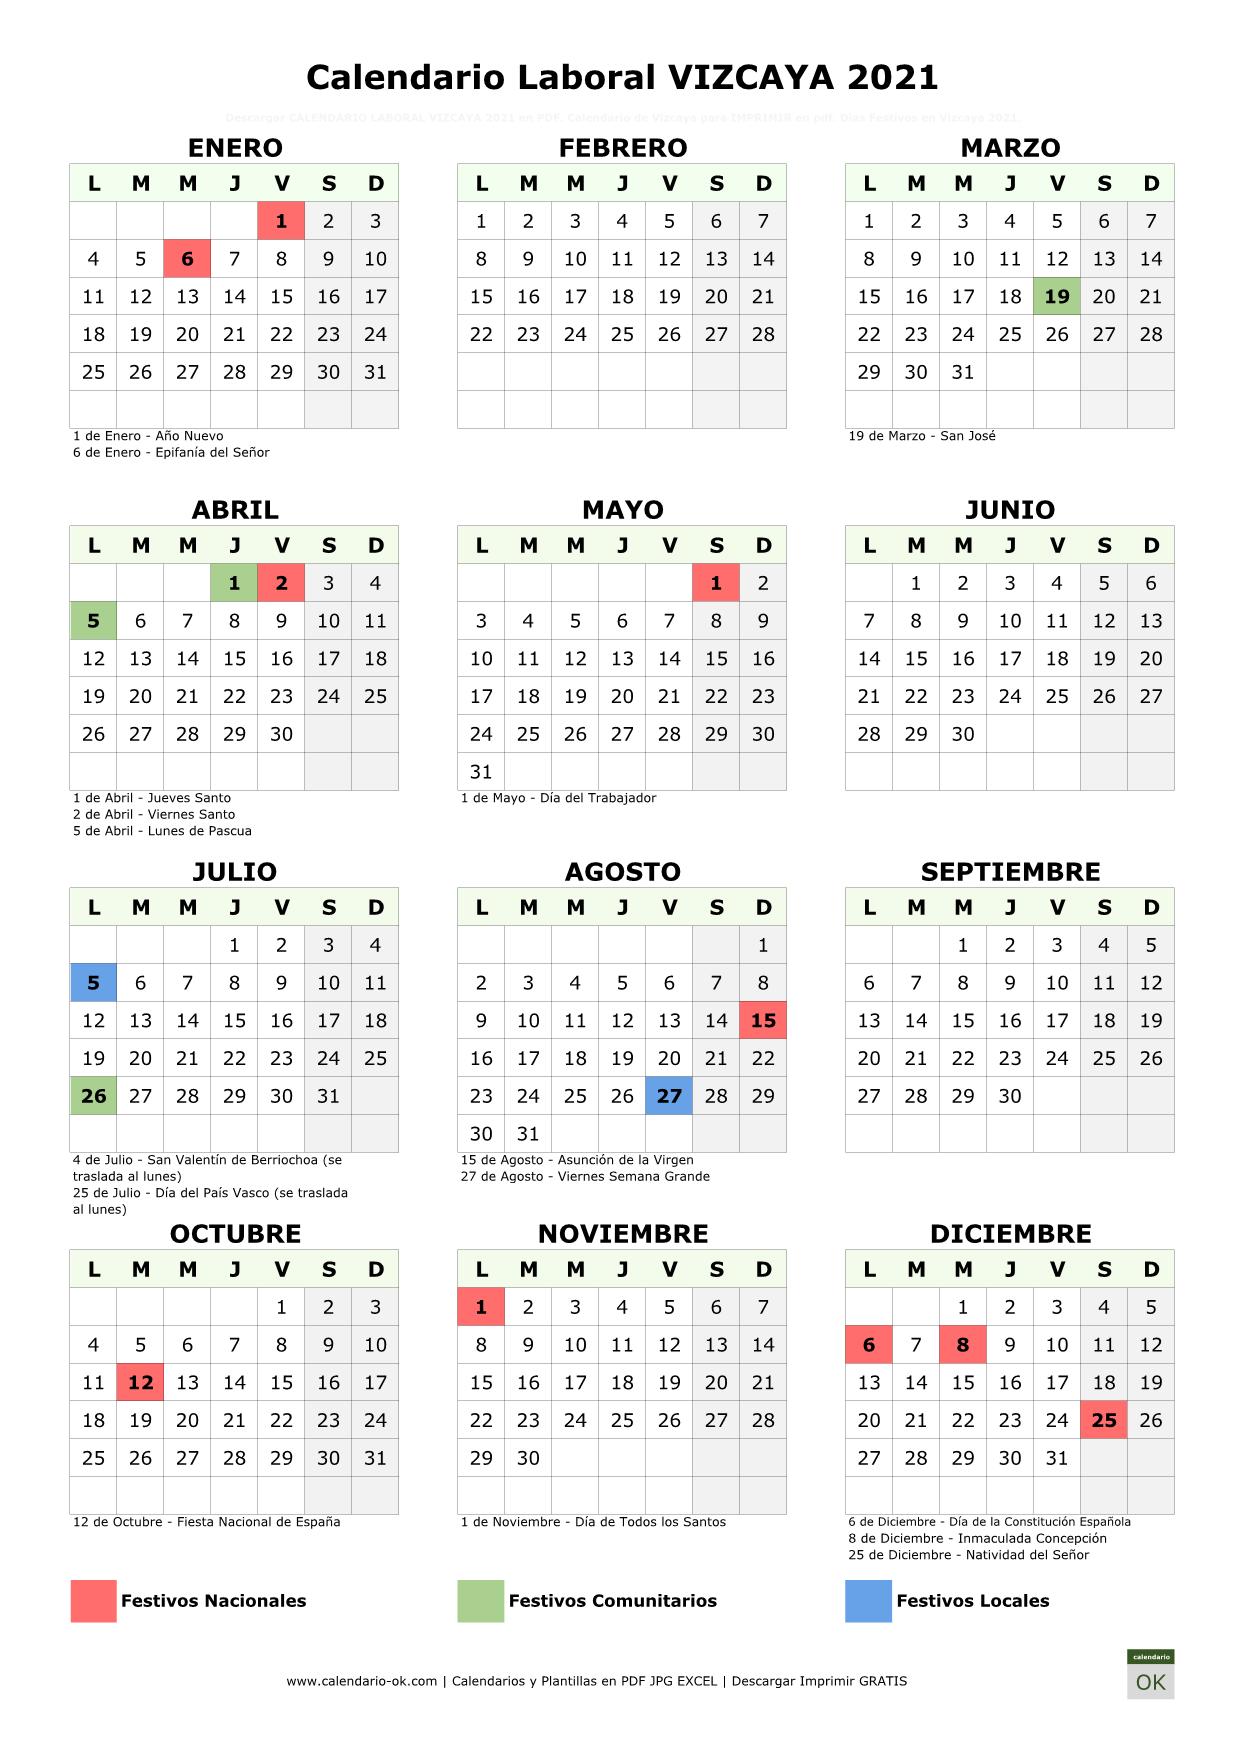 Calendario Laboral Vizcaya 2021 Para Imprimir